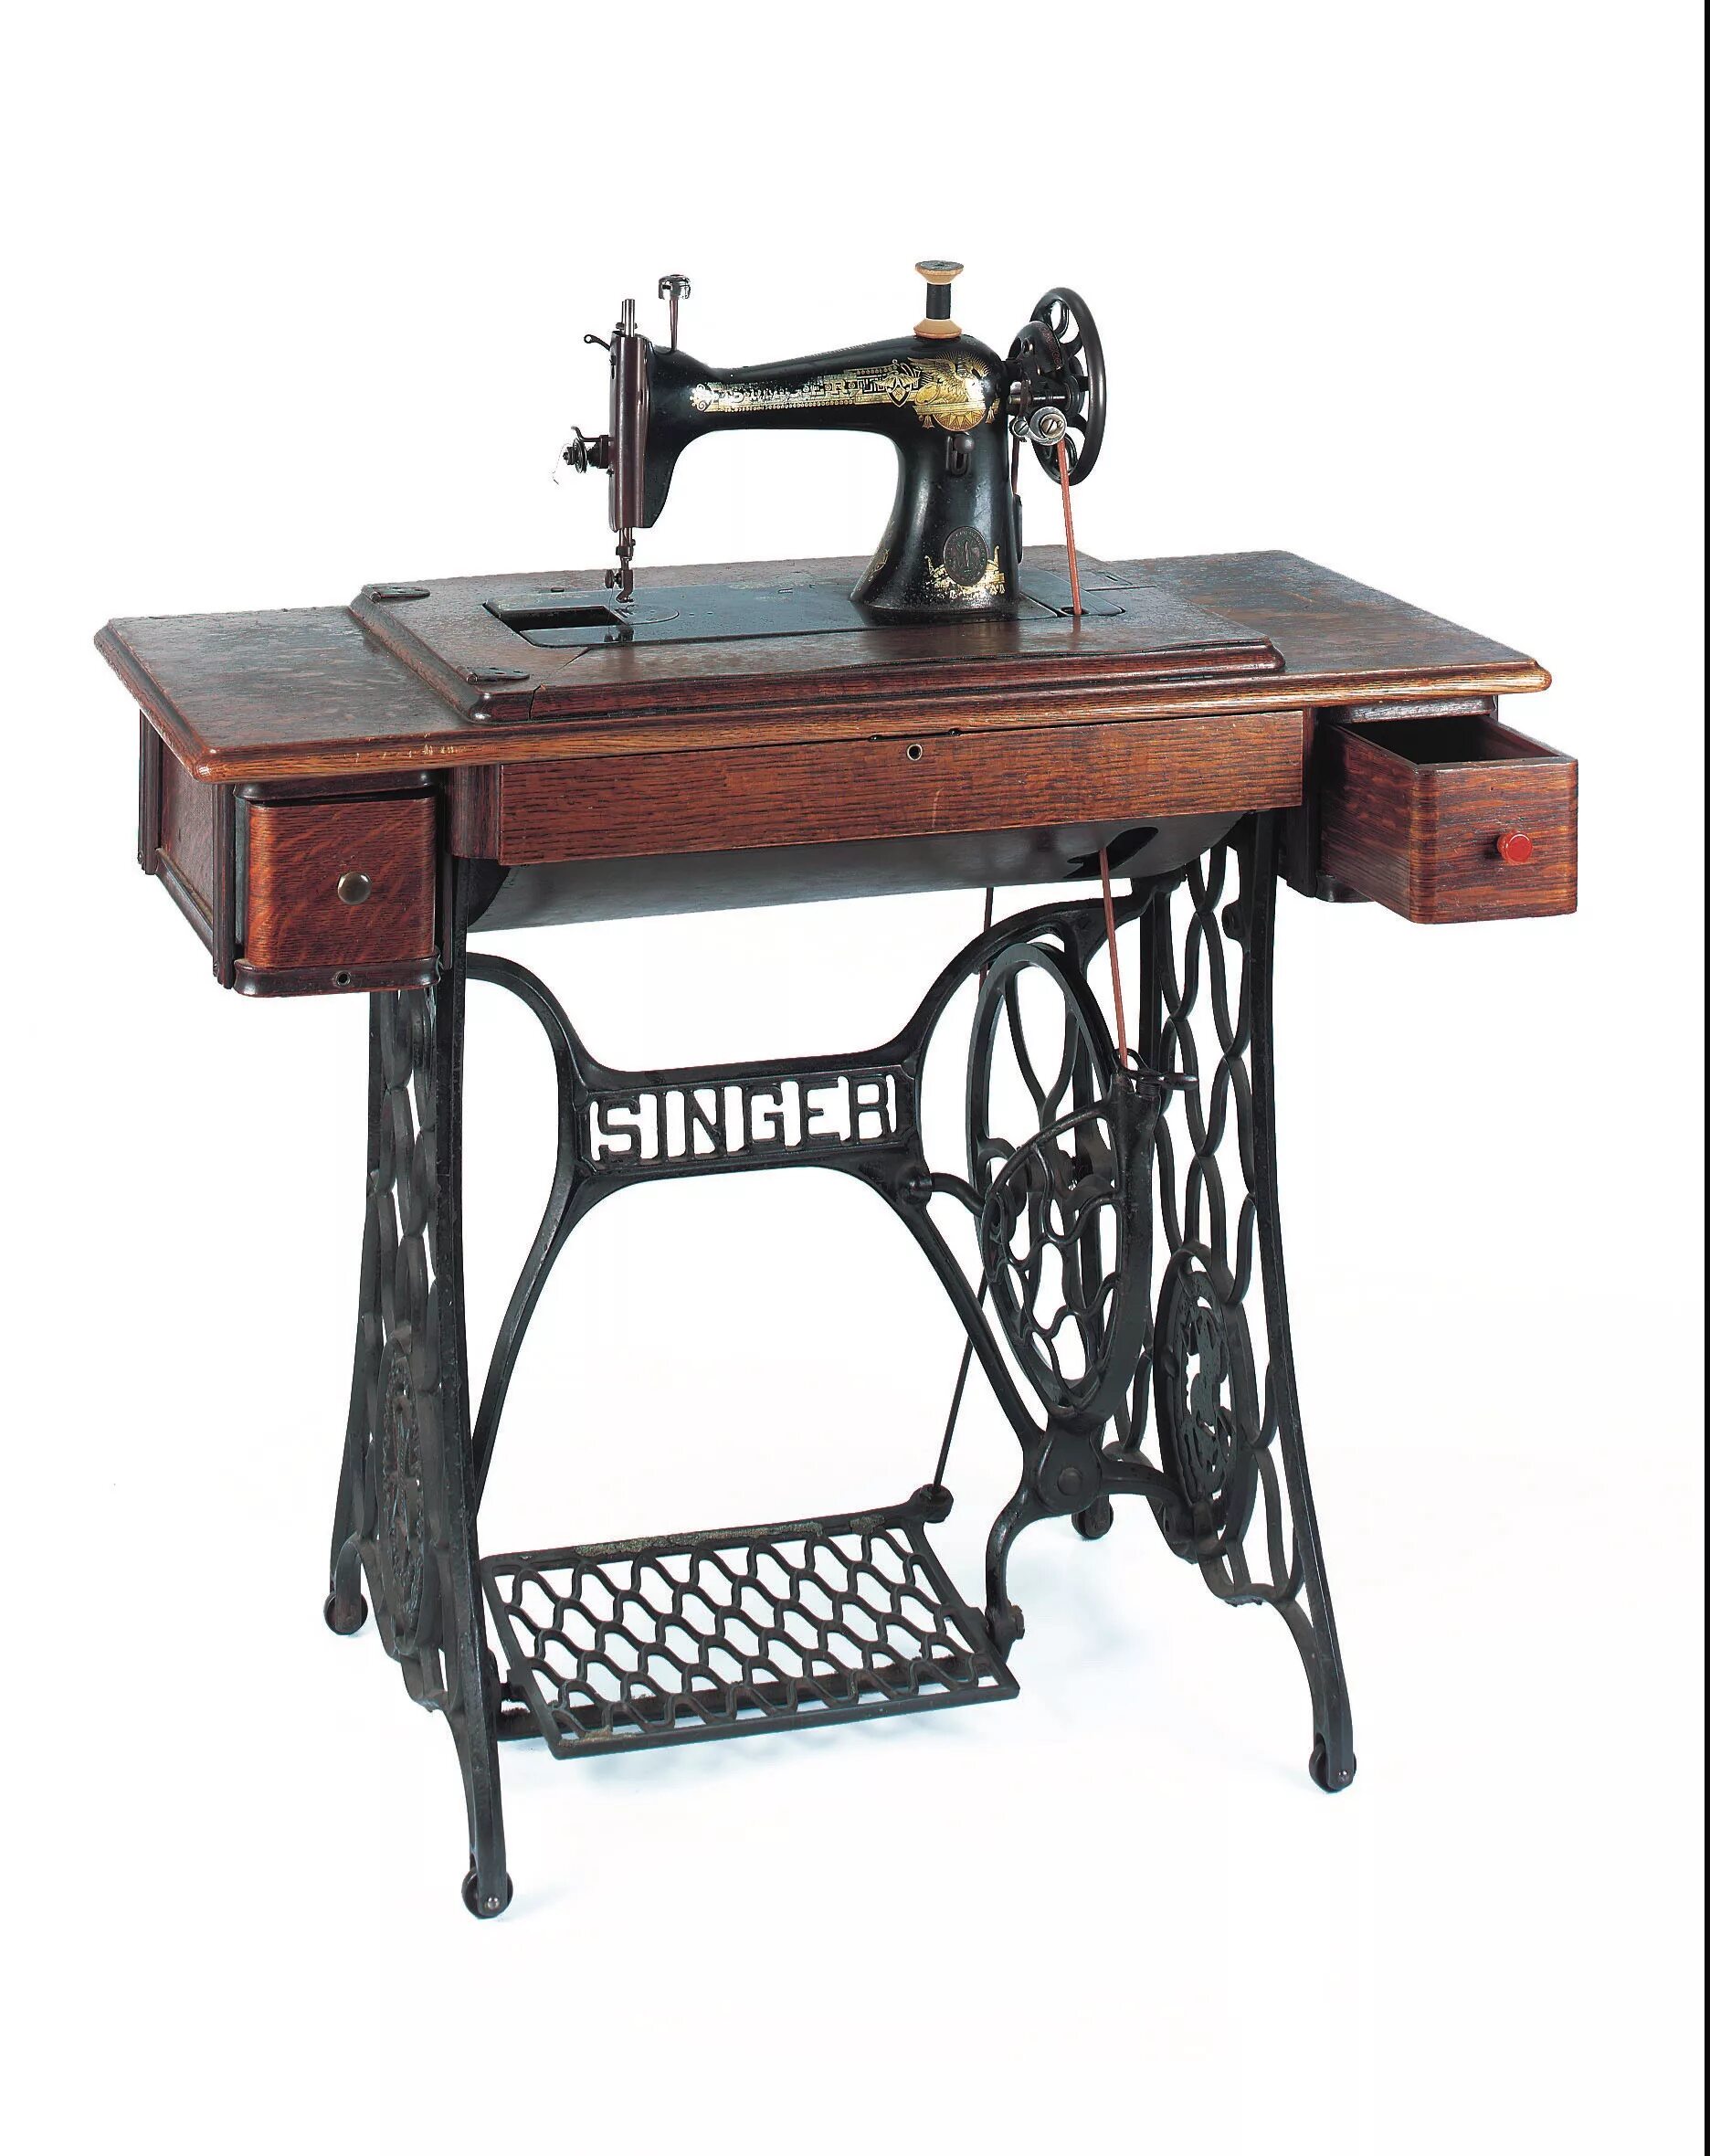 Швейная машинка зингер новая. Швейная машинка Зингер ретро. Швейная машинка Зингер 18 века. Швейная машинка Зингер 2250.